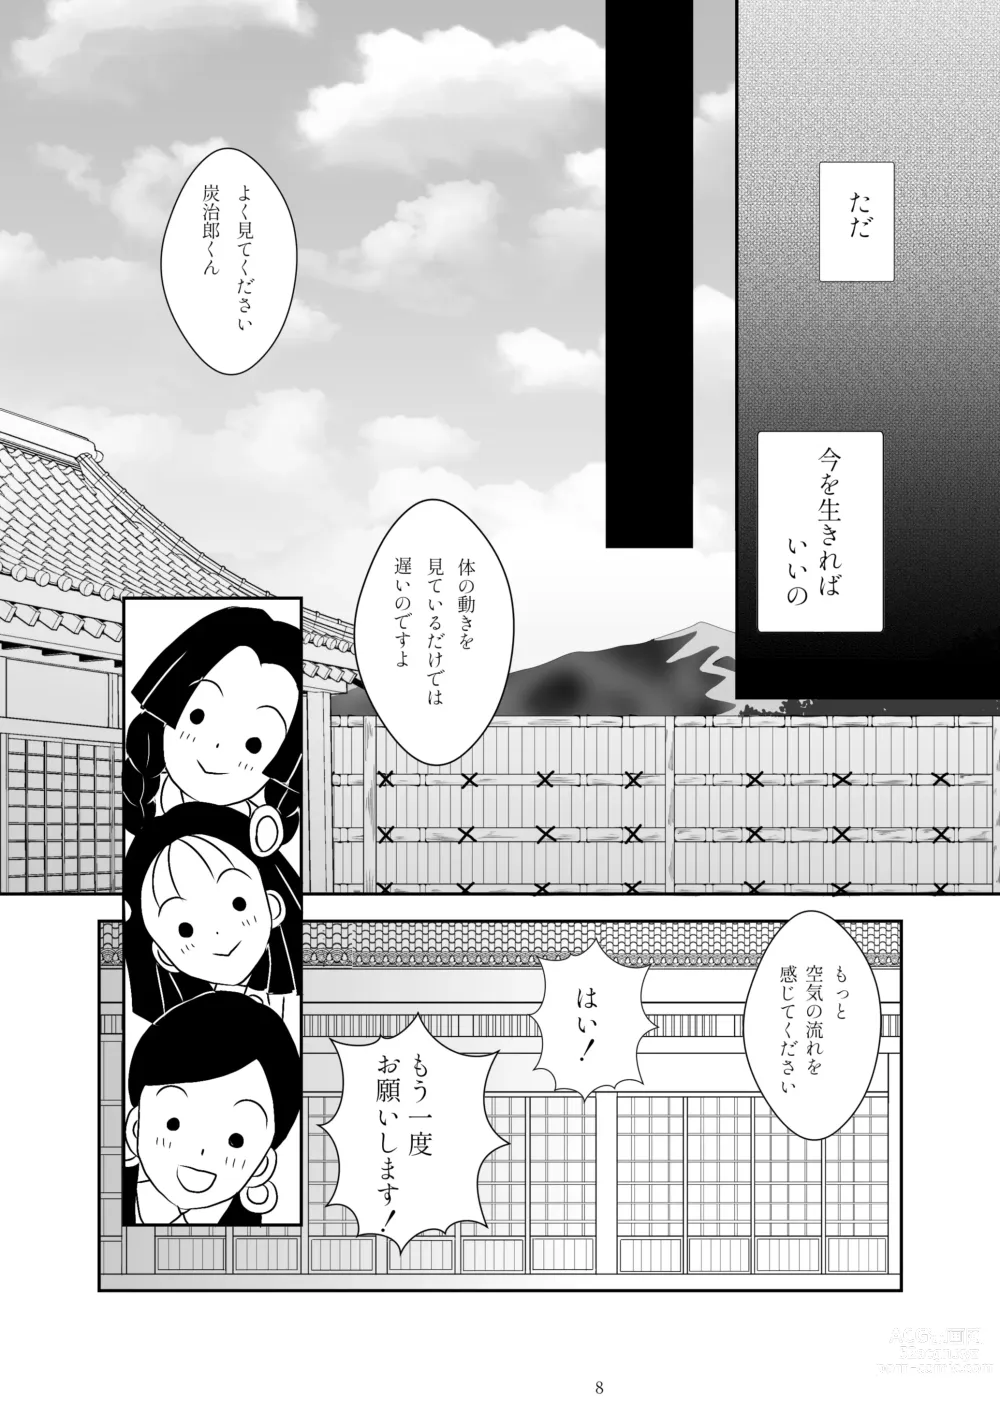 Page 4 of doujinshi Zutto, Anata to.